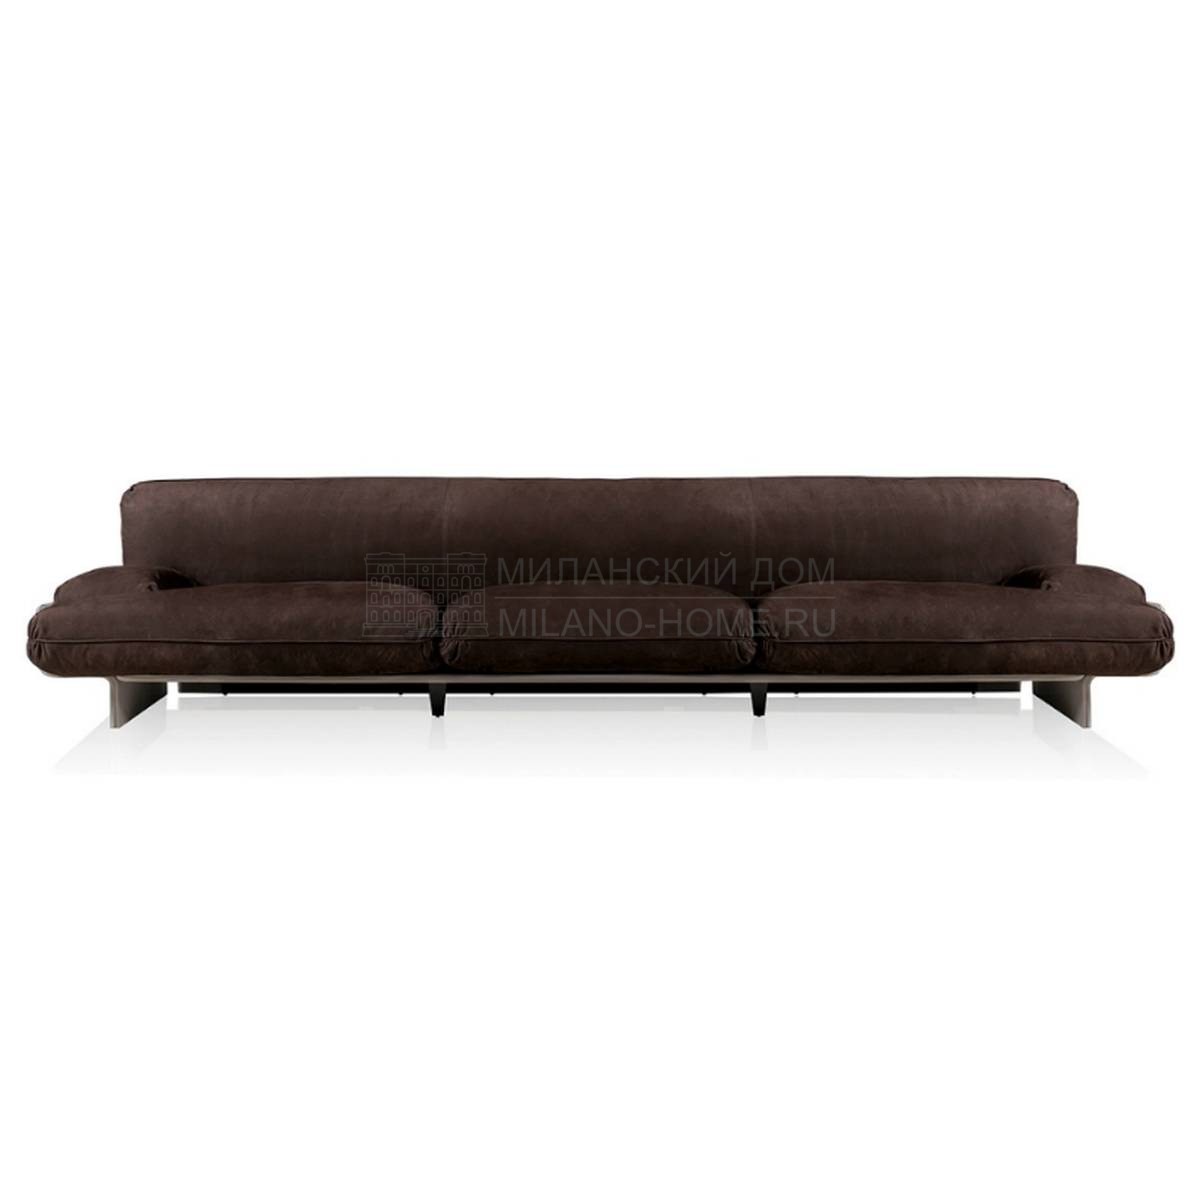 Прямой диван Bardot sofa из Италии фабрики BAXTER